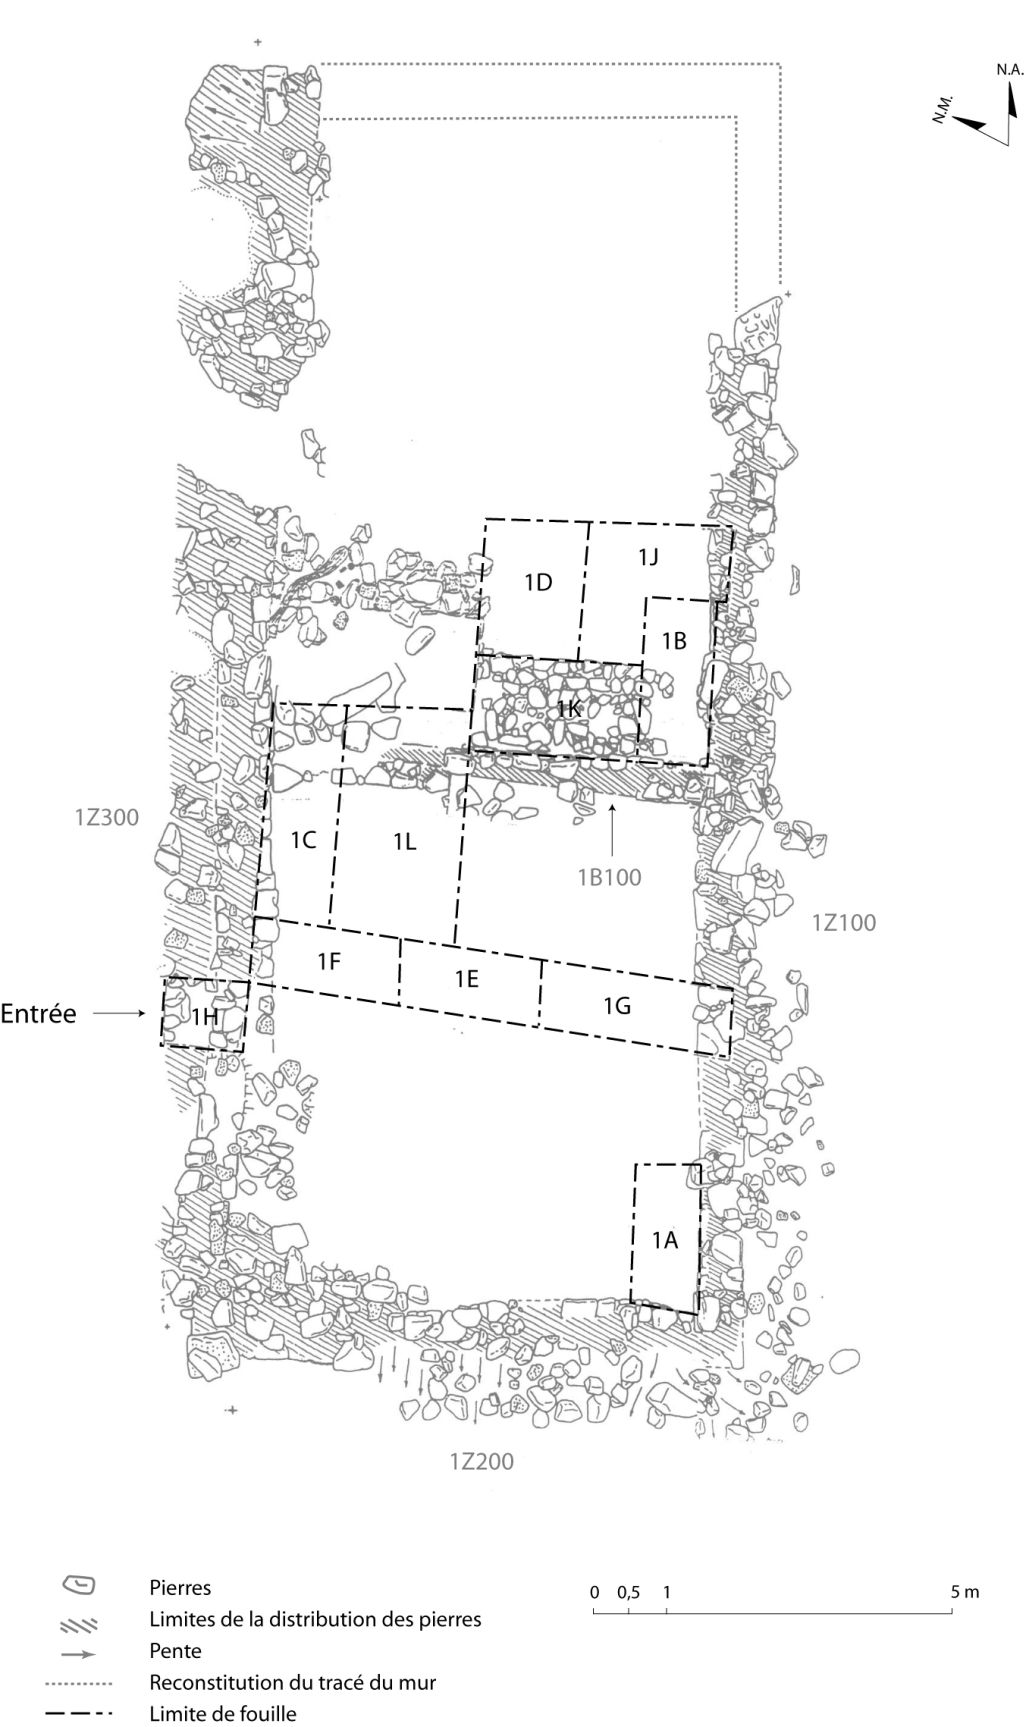 Plan des vestiges de la forge. Alain Chouinard, Archéologie et archéométallurgie de la forge, 2001.